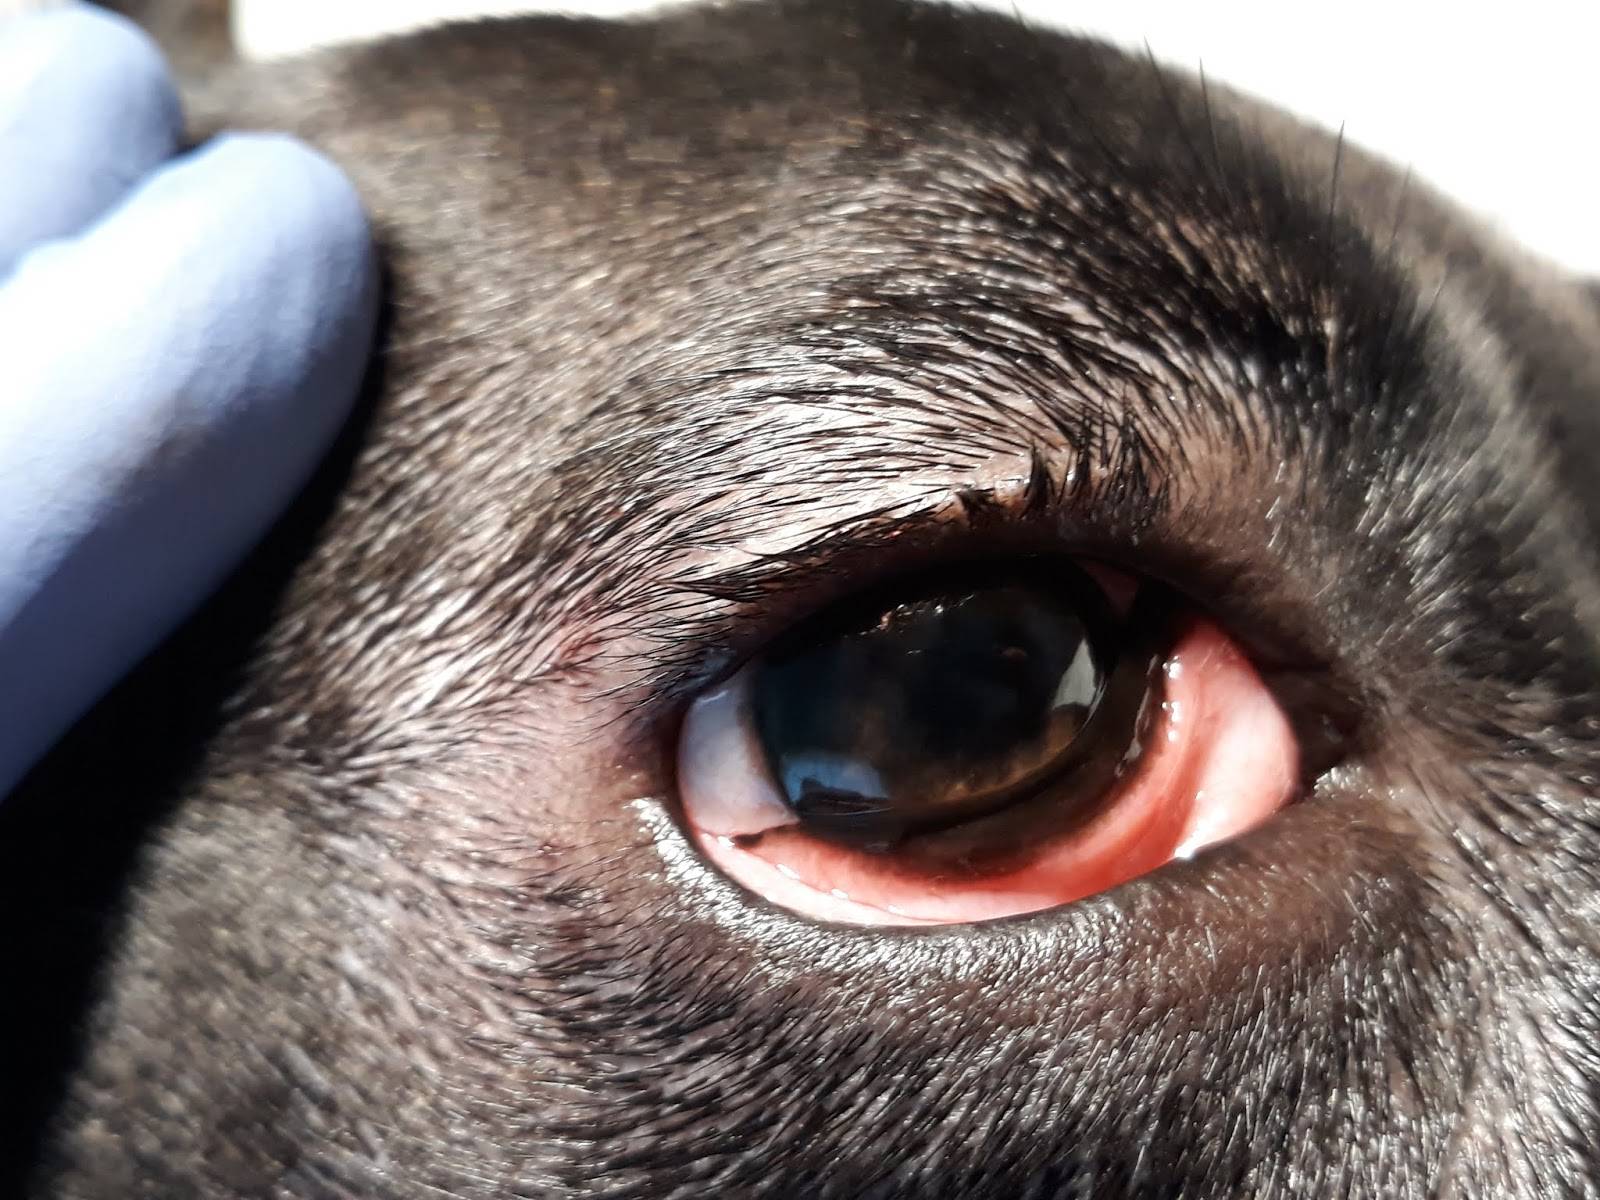 Эрозии и язвы роговицы у кошек и собак | офтальмологическое отделение ветеринарной клиники